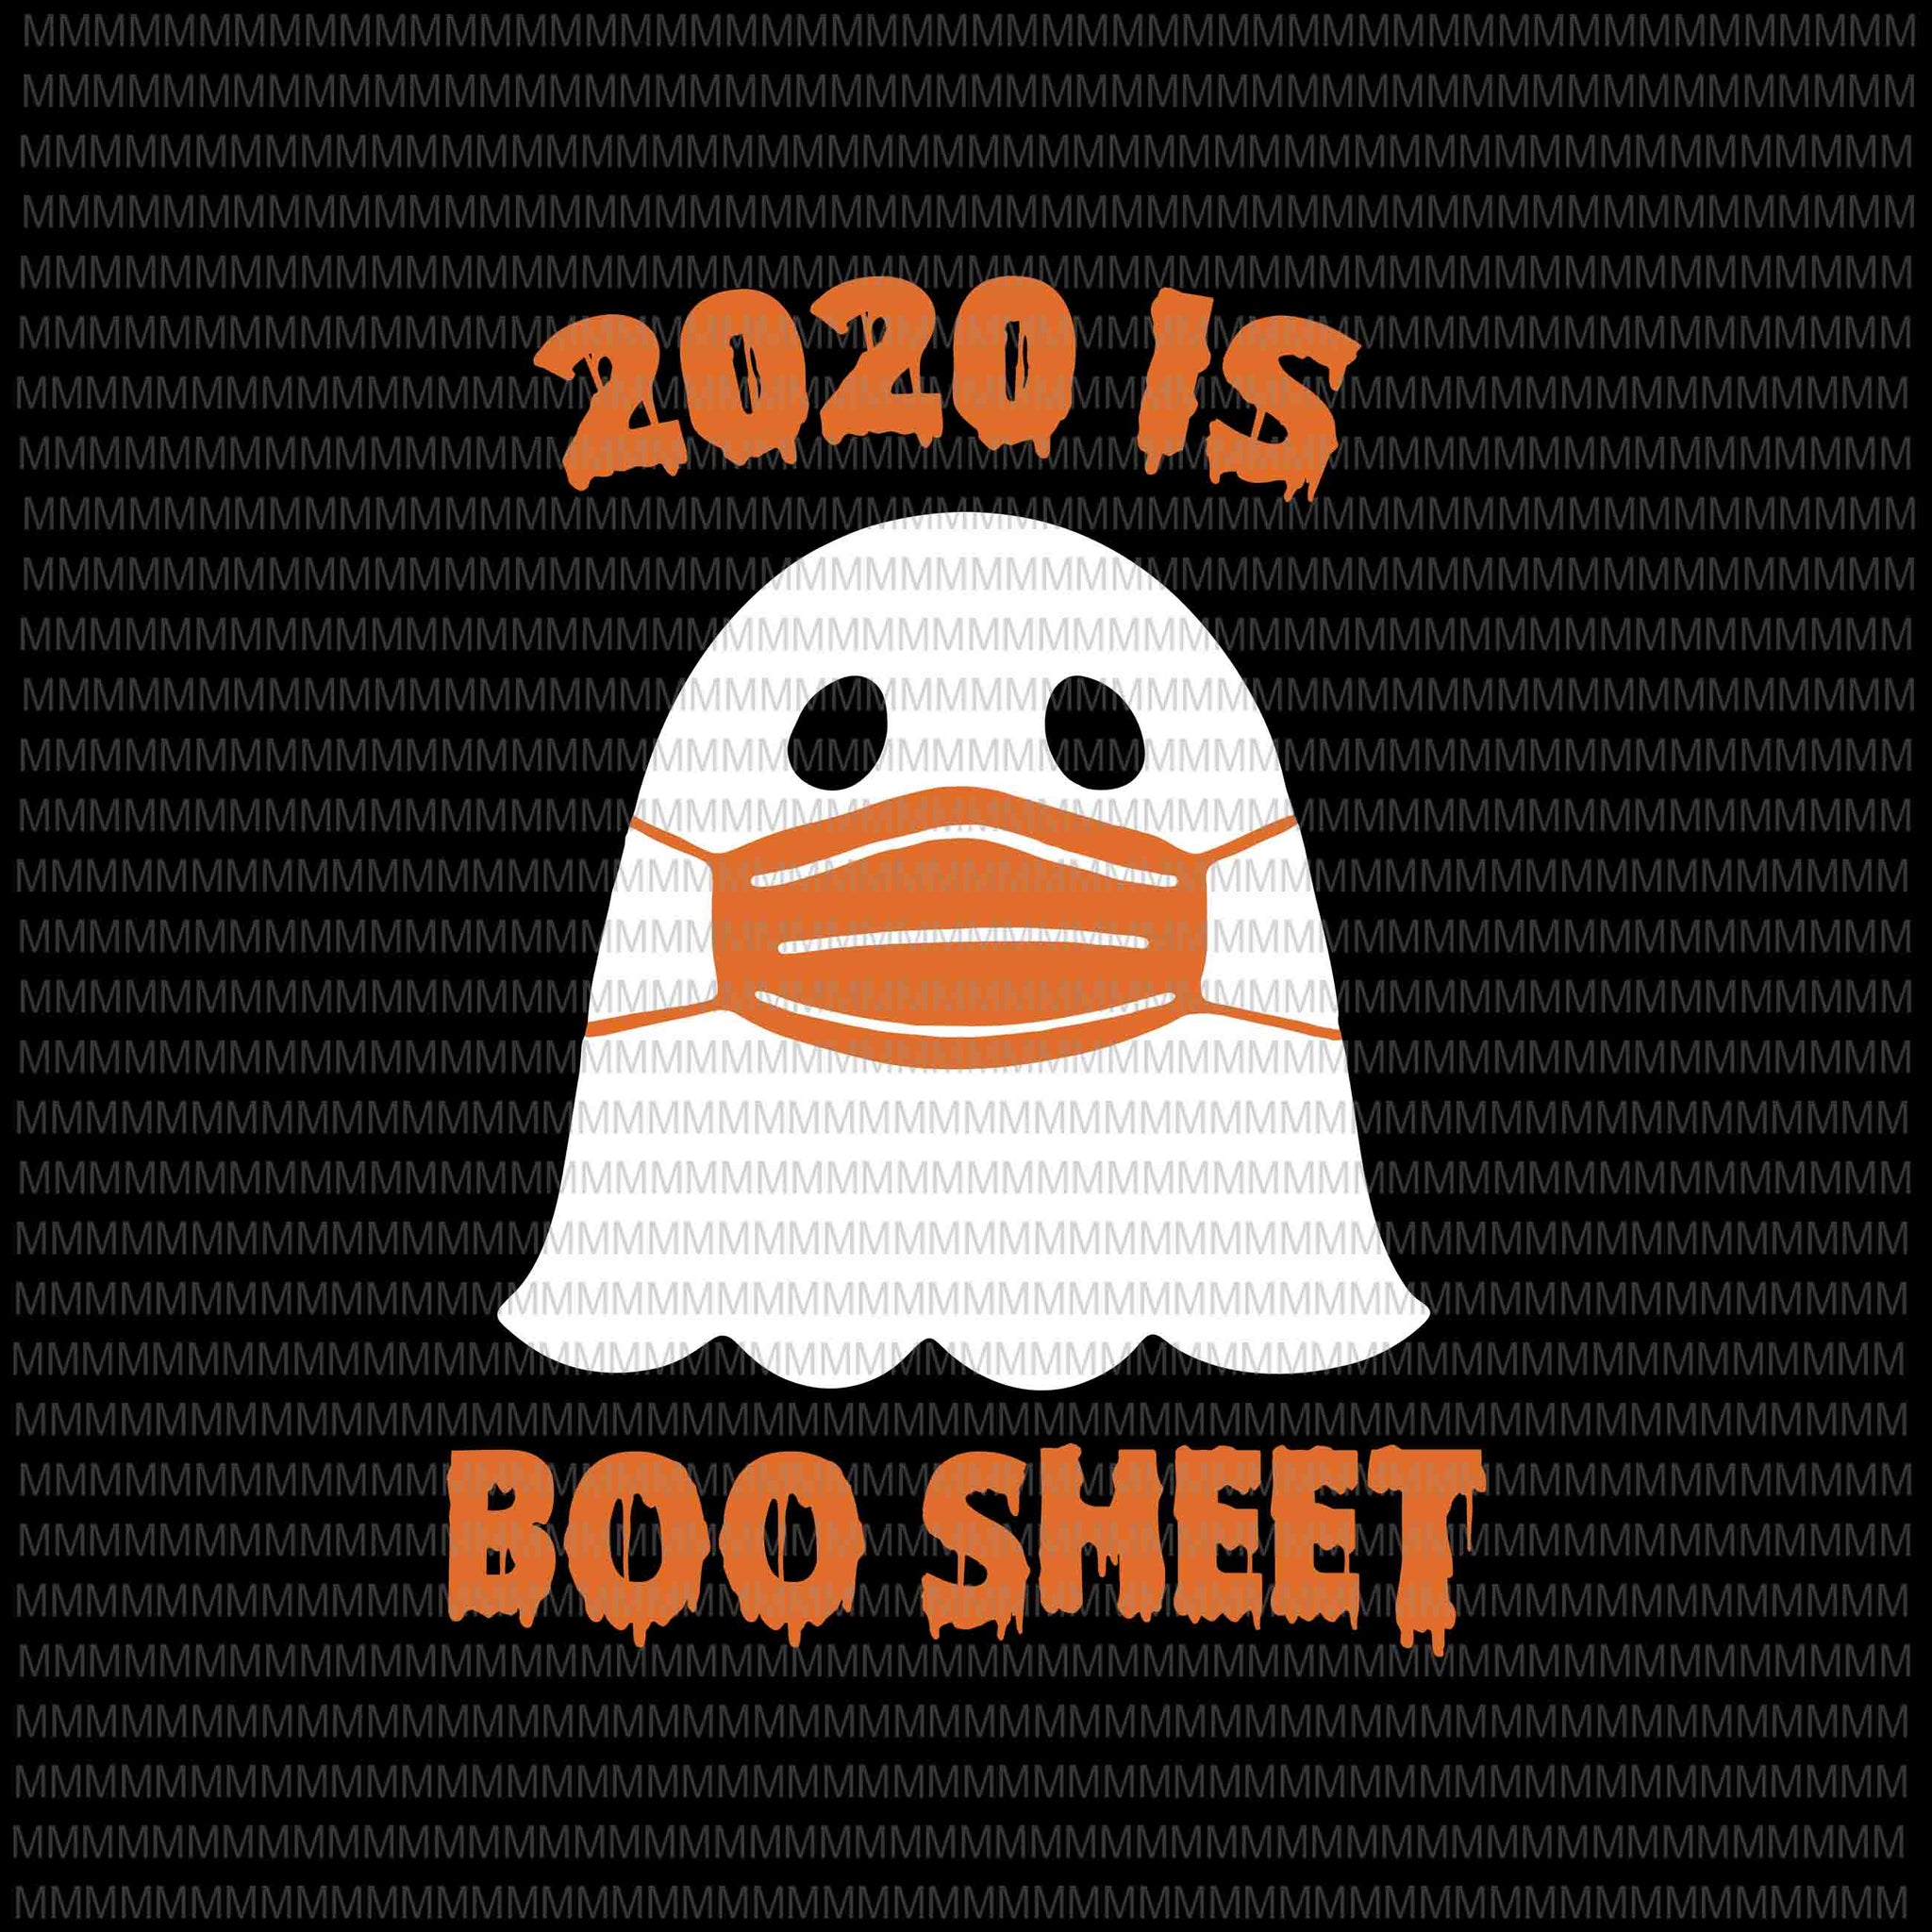 2020 is Boo Sheet svg, funny Halloween svg, pumpkin svg, funny ghost svg, boo sheet halloween svg